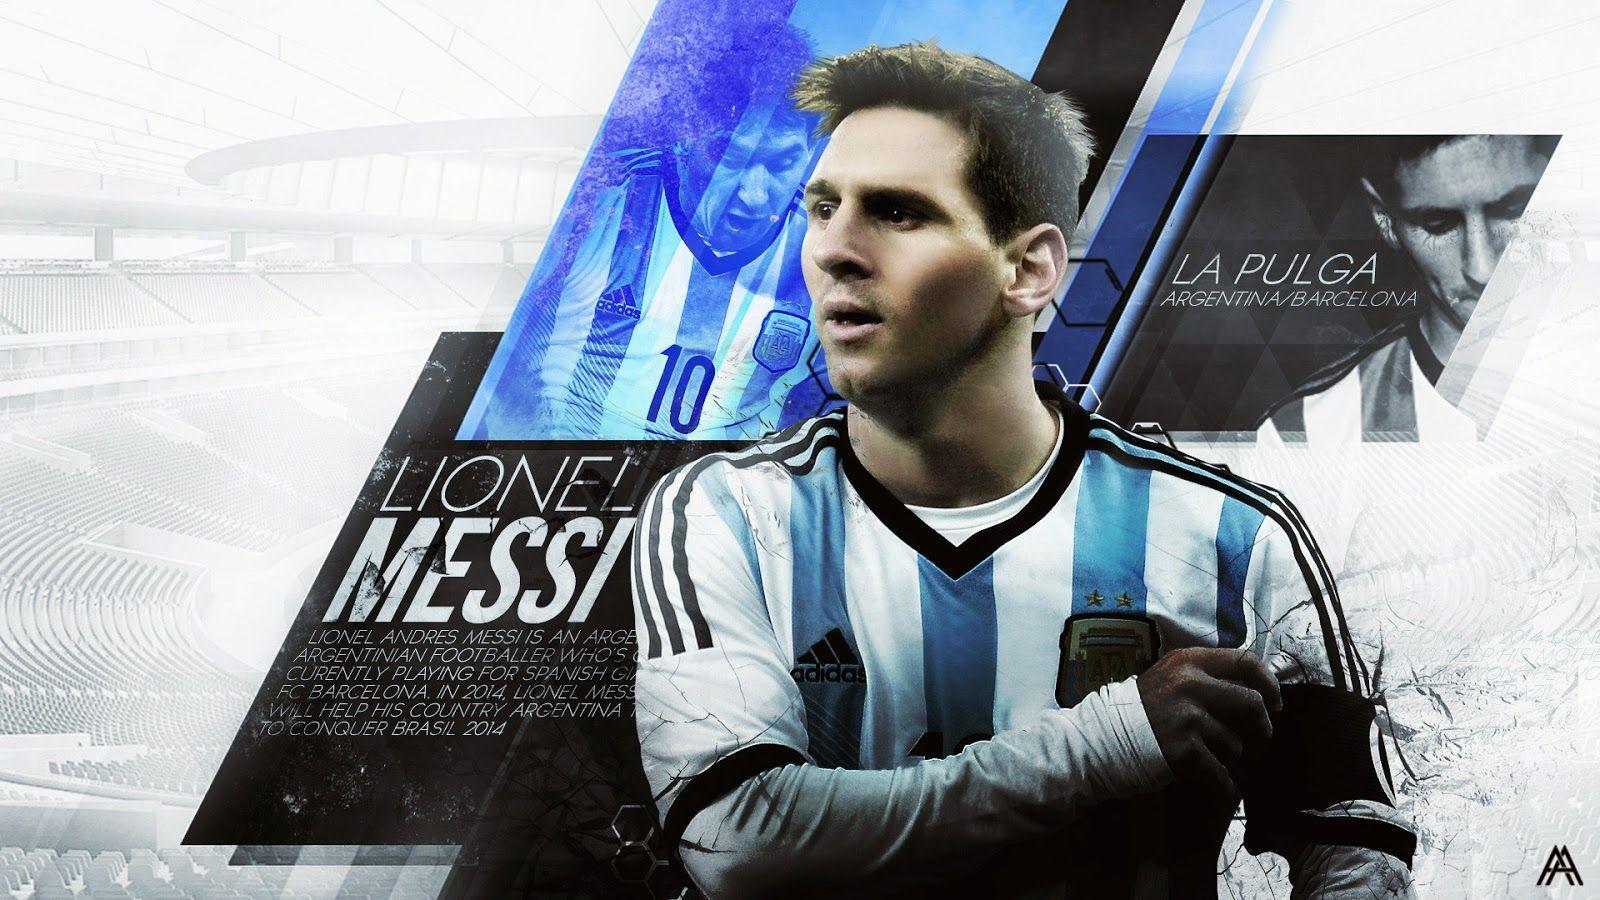 Lionel Messi 2015 Background Attachment 8456 Wallpaper Site